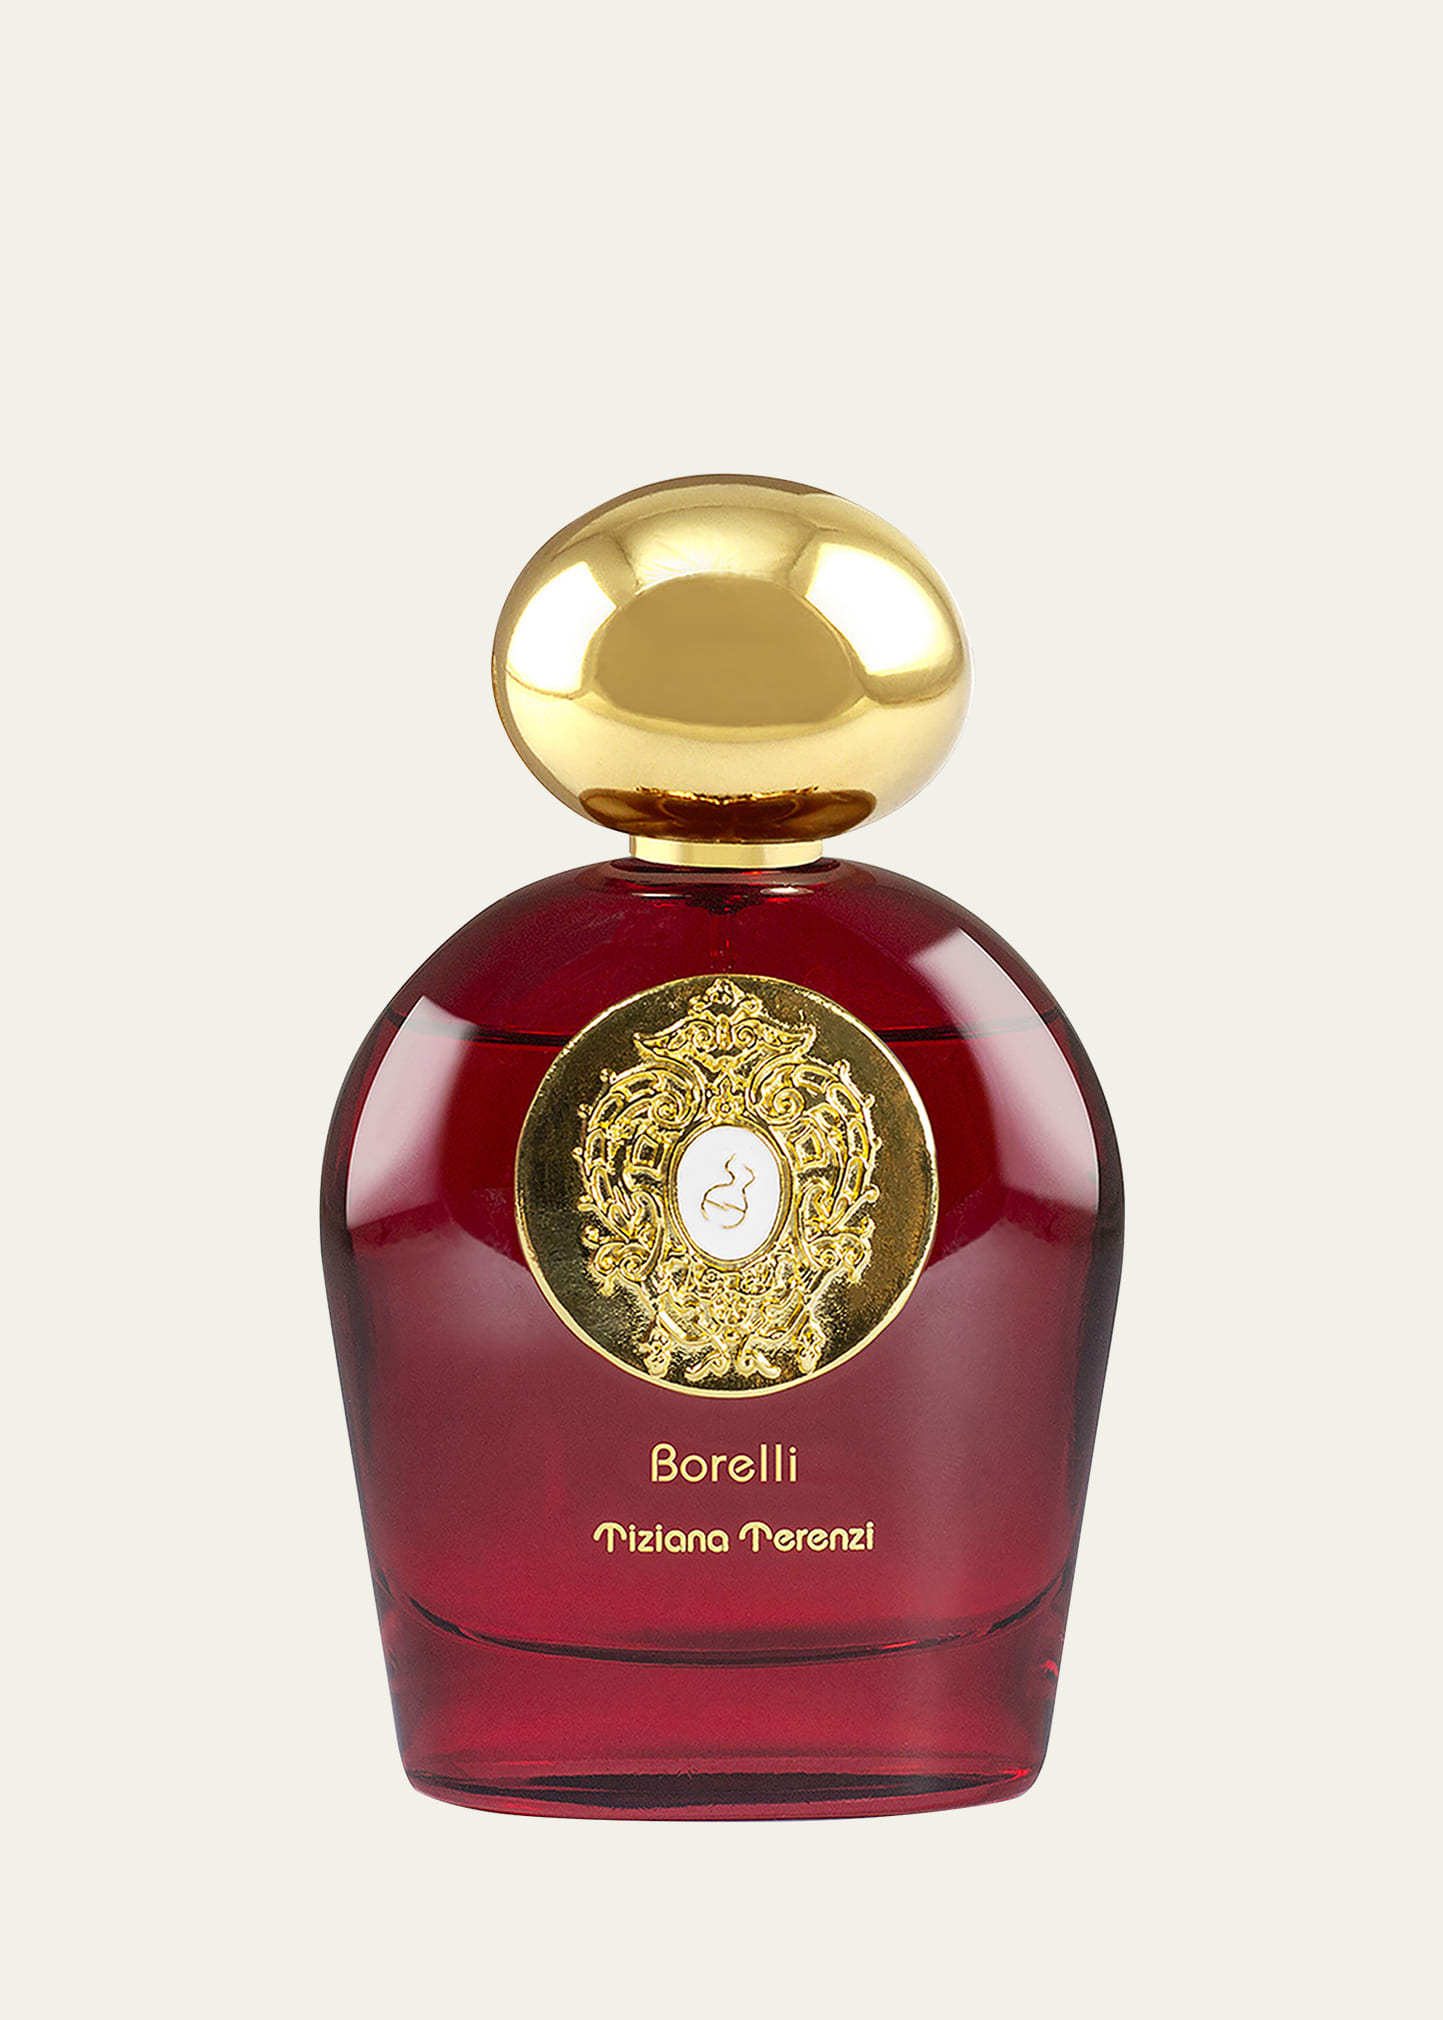 Borelli Extrait de Parfum, 3.4 oz.